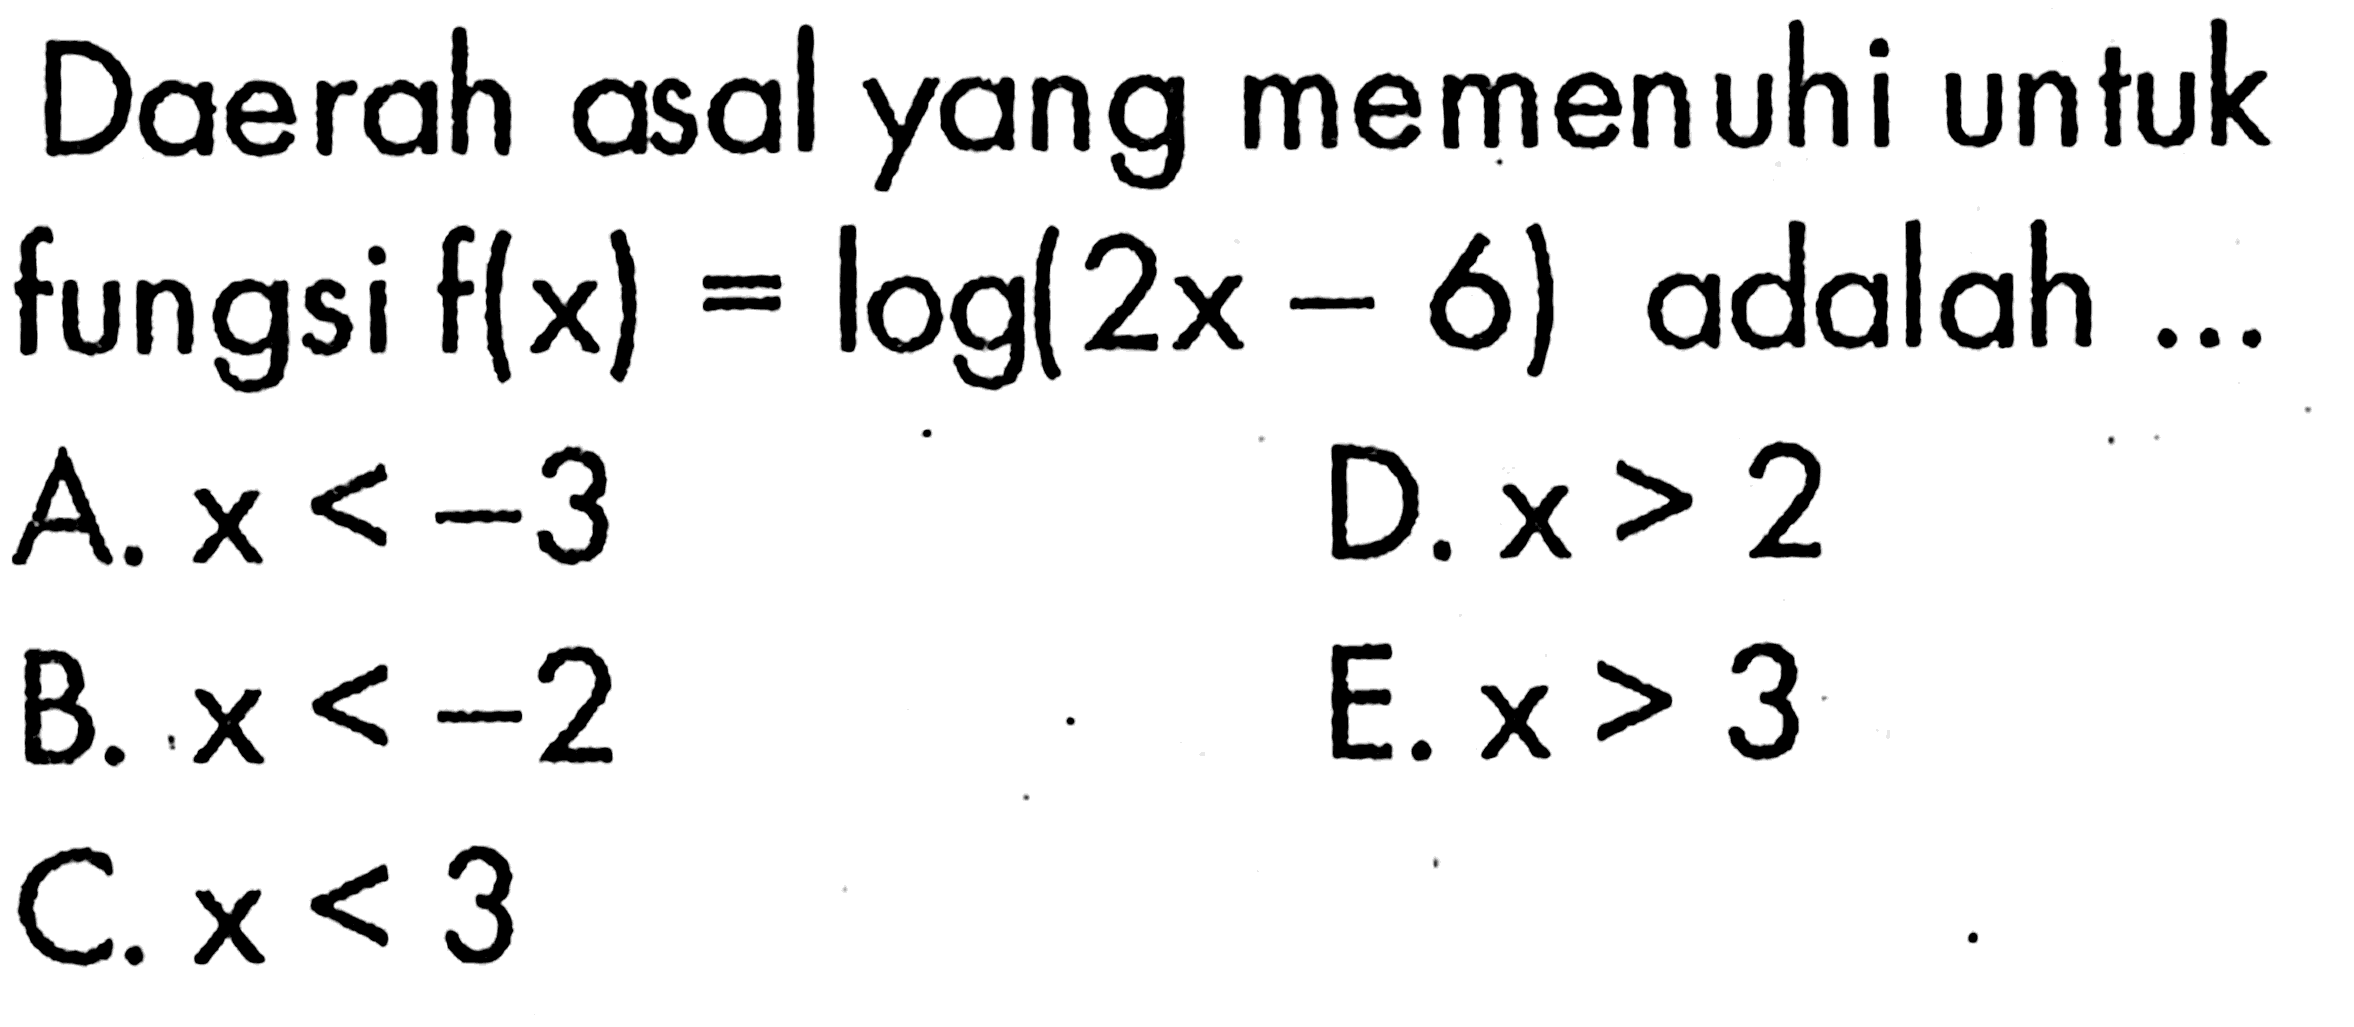 Daerah asal yang memenuhi untuk fungsi f(x)=log(2x-6) adalah ...